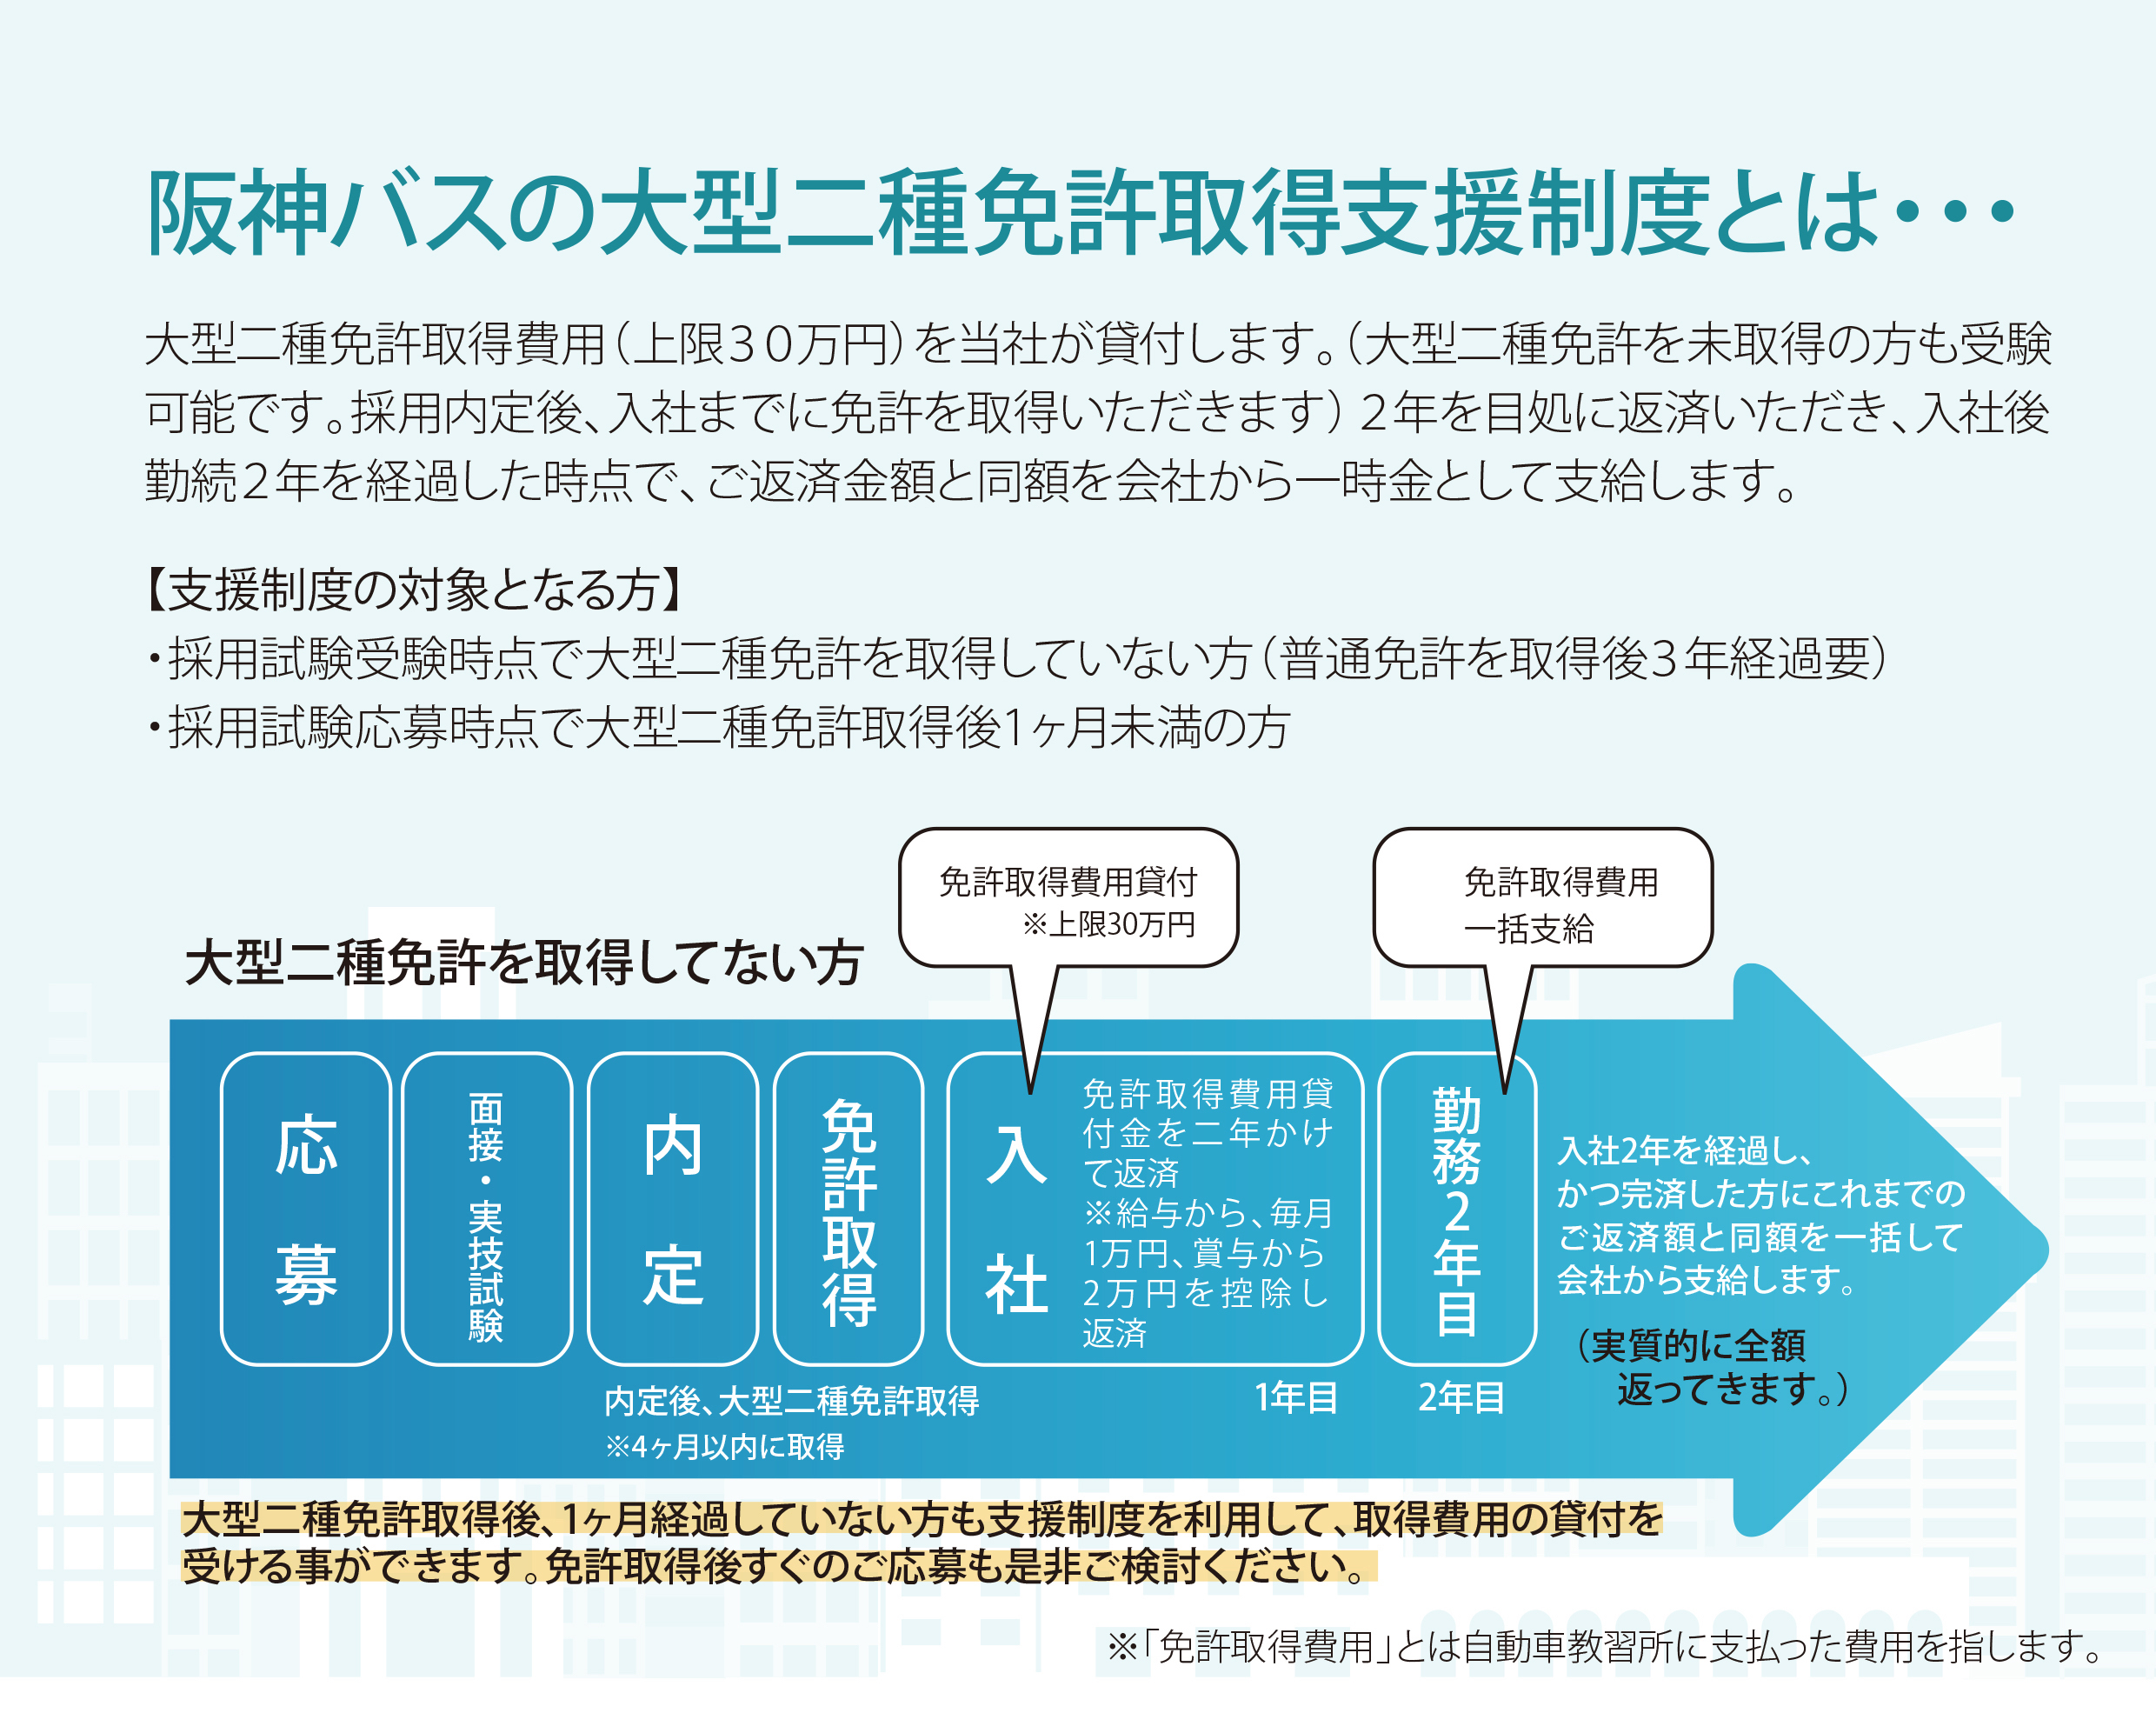 阪神バスの支援制度